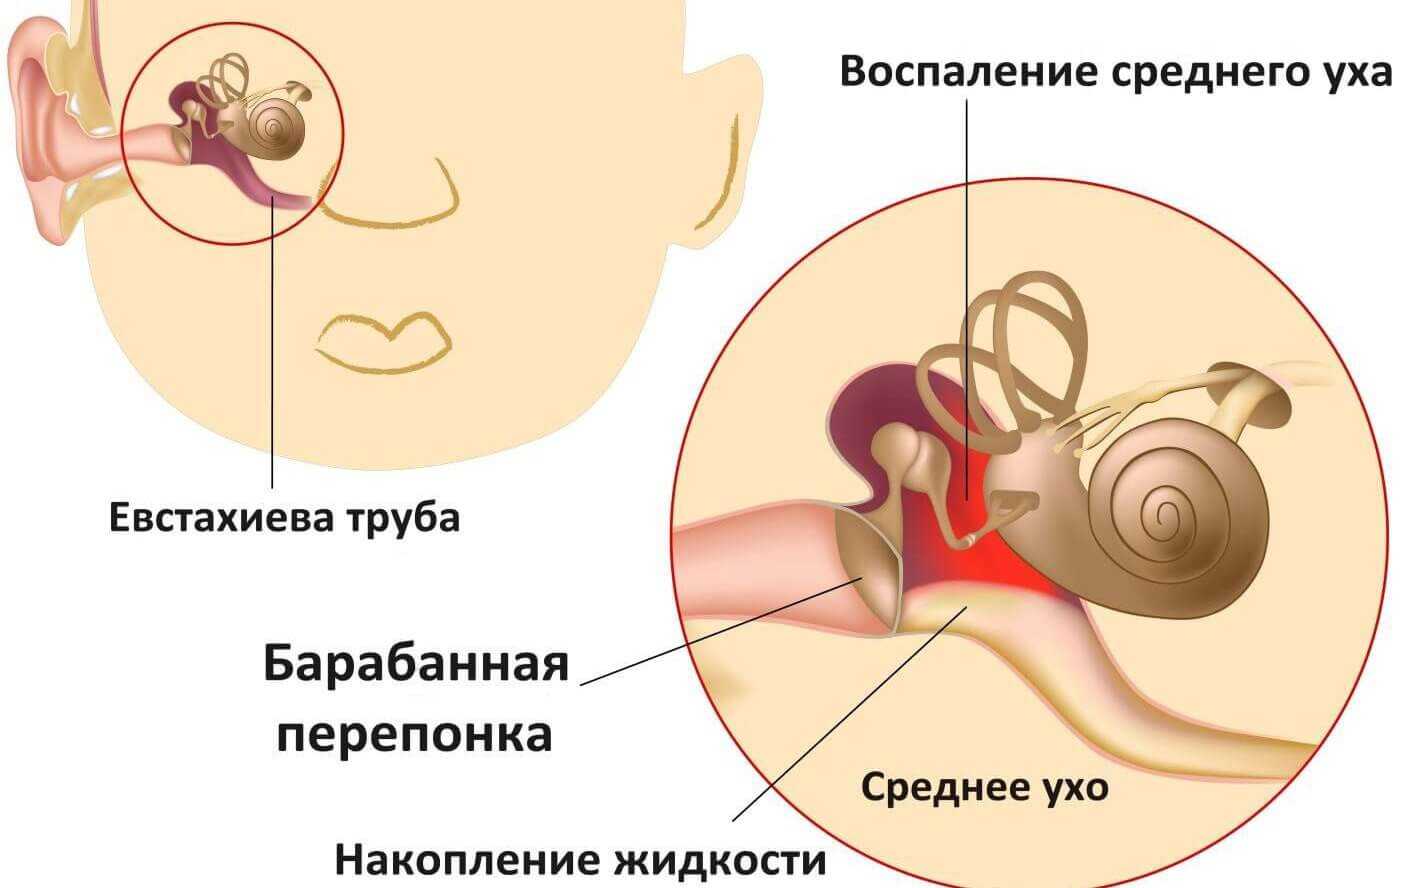 Как понять что у ребенка болят уши. Средний отит барабанная перепонка. Воспаление среднего уха. Восполениеисреднего уха.